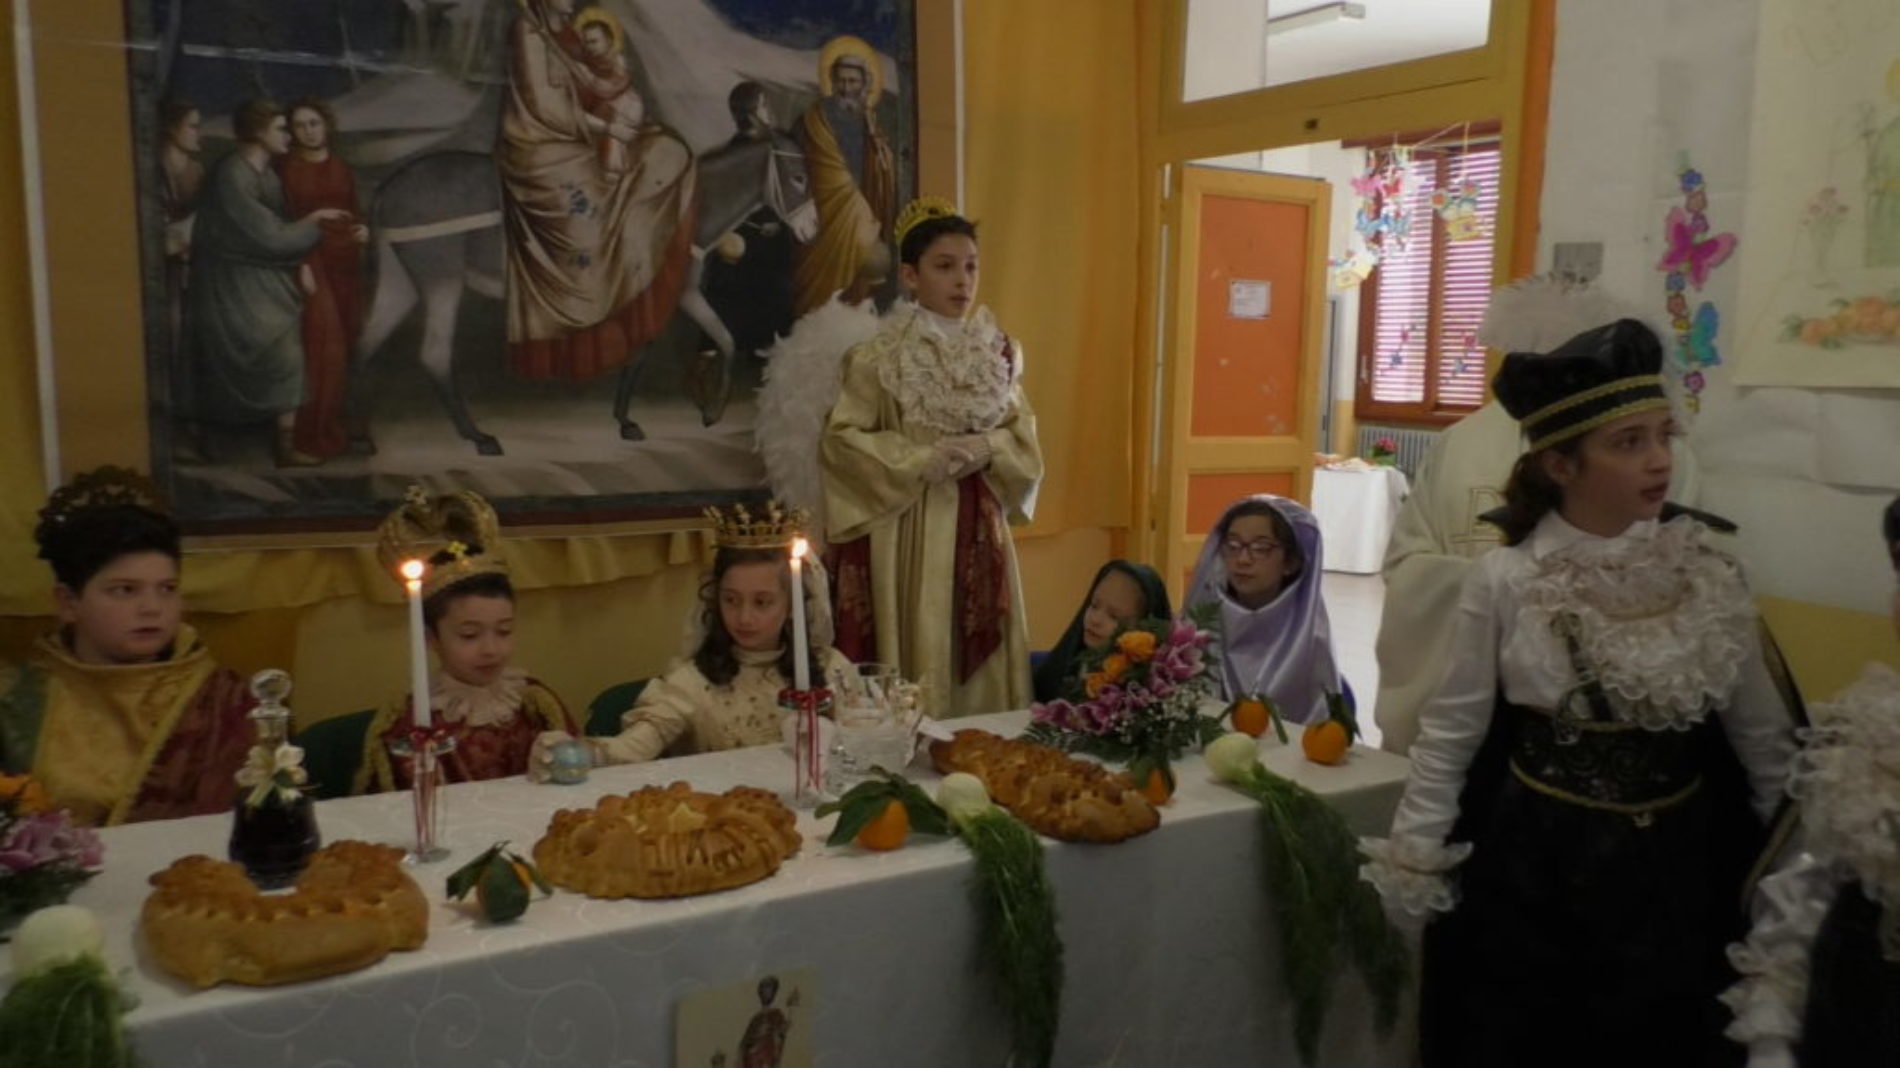 Tradizione e Folclore con “A Tavulata di San Giuseppe” al plesso Europa con la rappresentazione della “Fuga in Egitto”